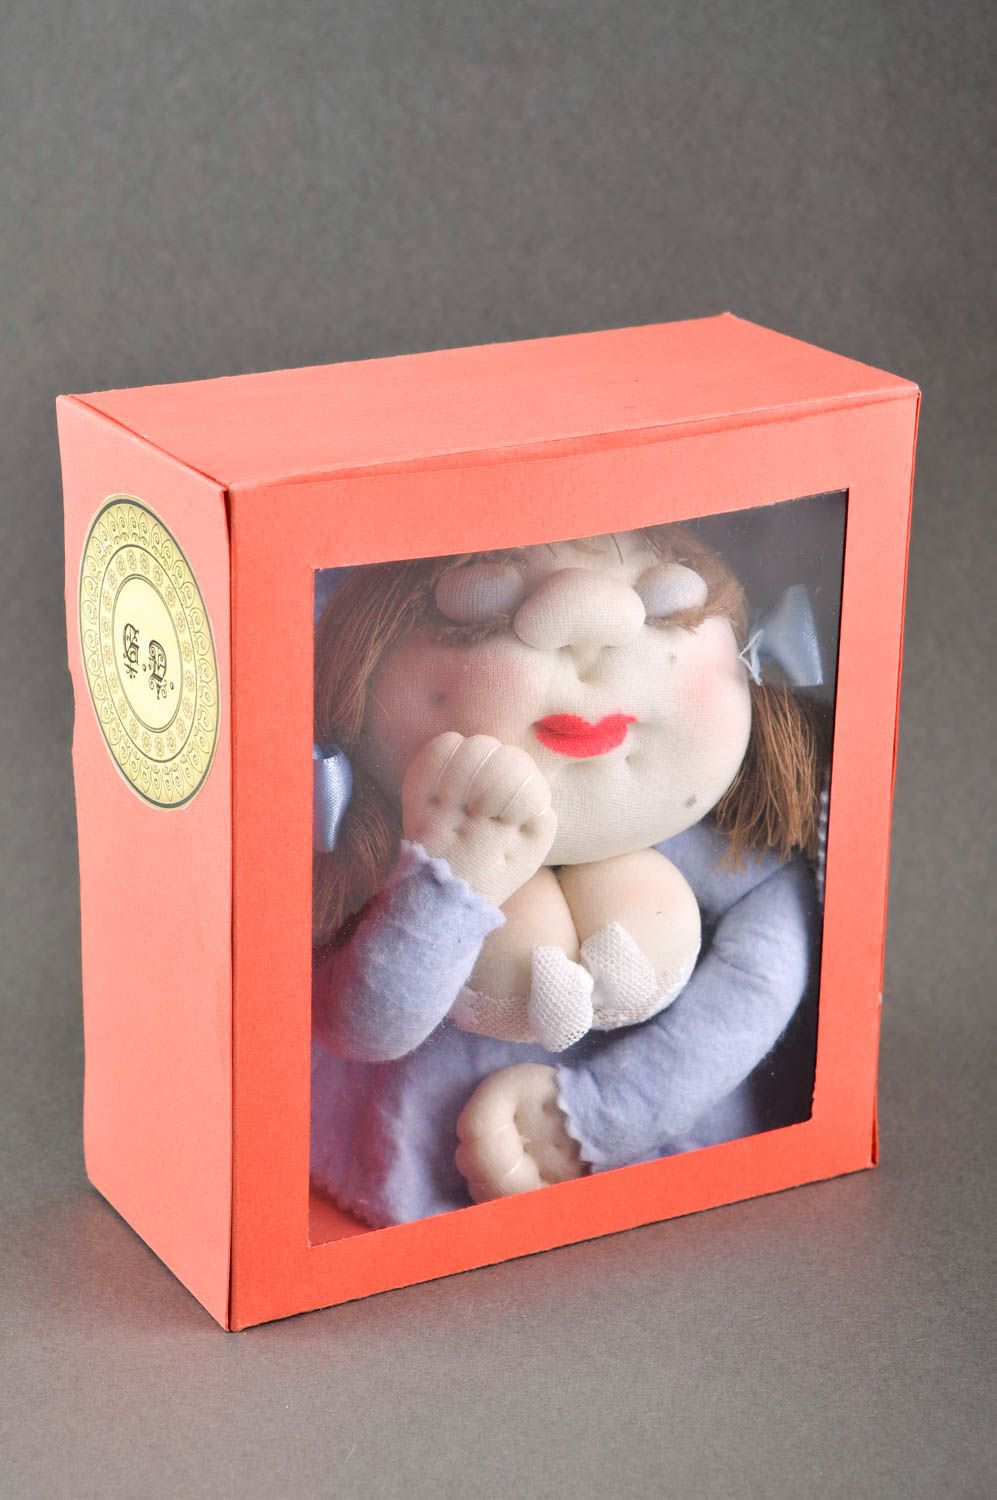 Puppe handgemacht Stoff Puppe Kinder Spielzeug Geschenk Idee originell nett foto 1